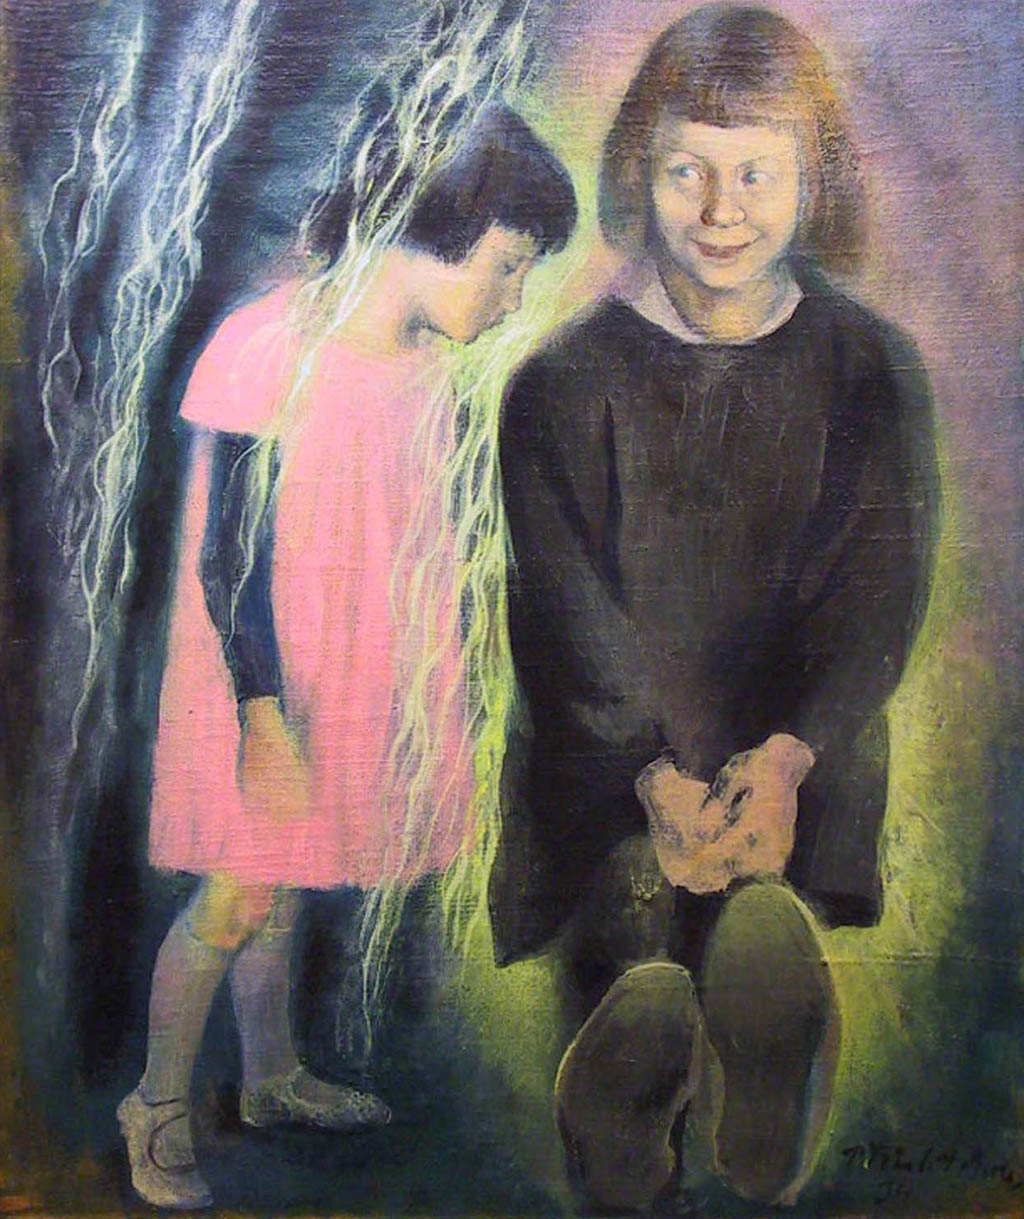 Pavel Tchelitchew - Les Enfants - 1934 oil on canvas